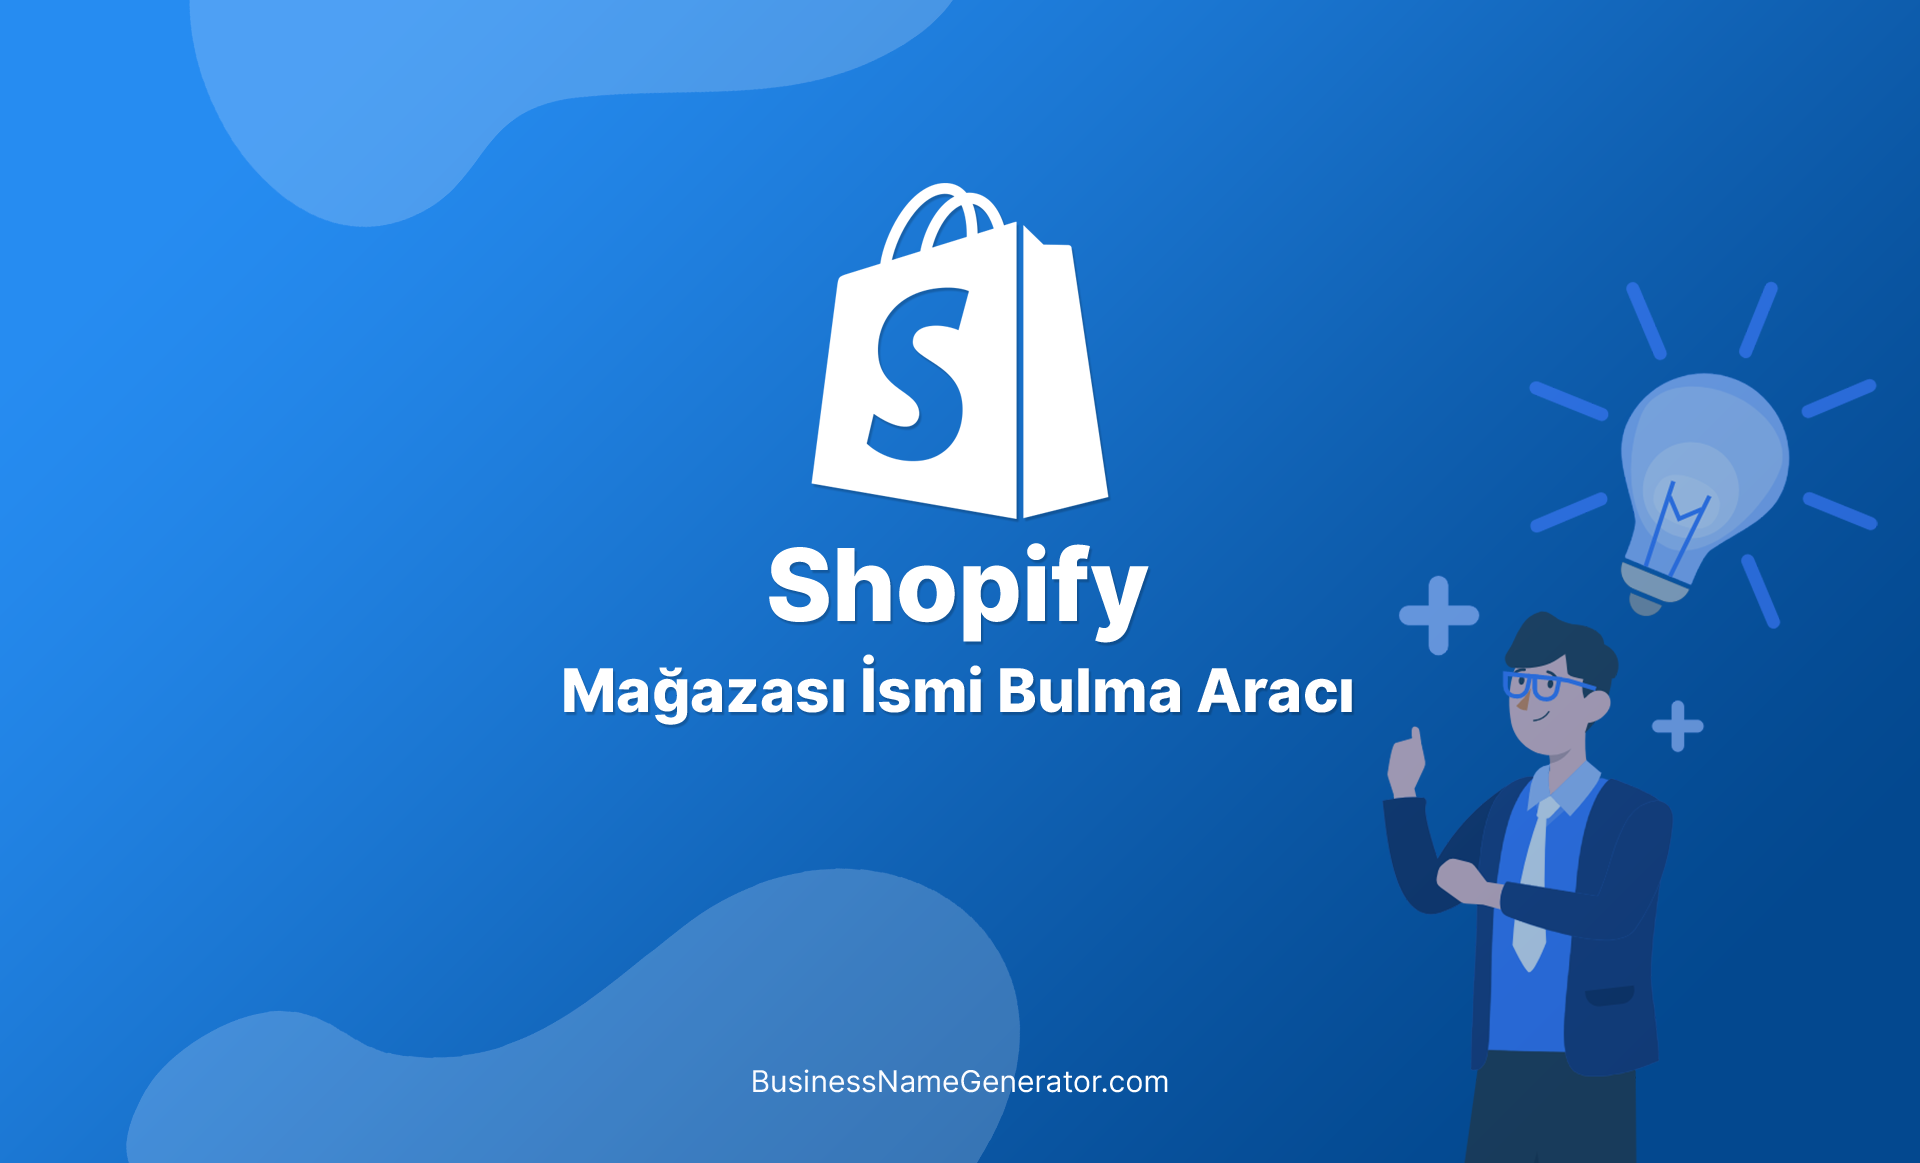 Shopify Mağazası İsmi Bulma Aracı